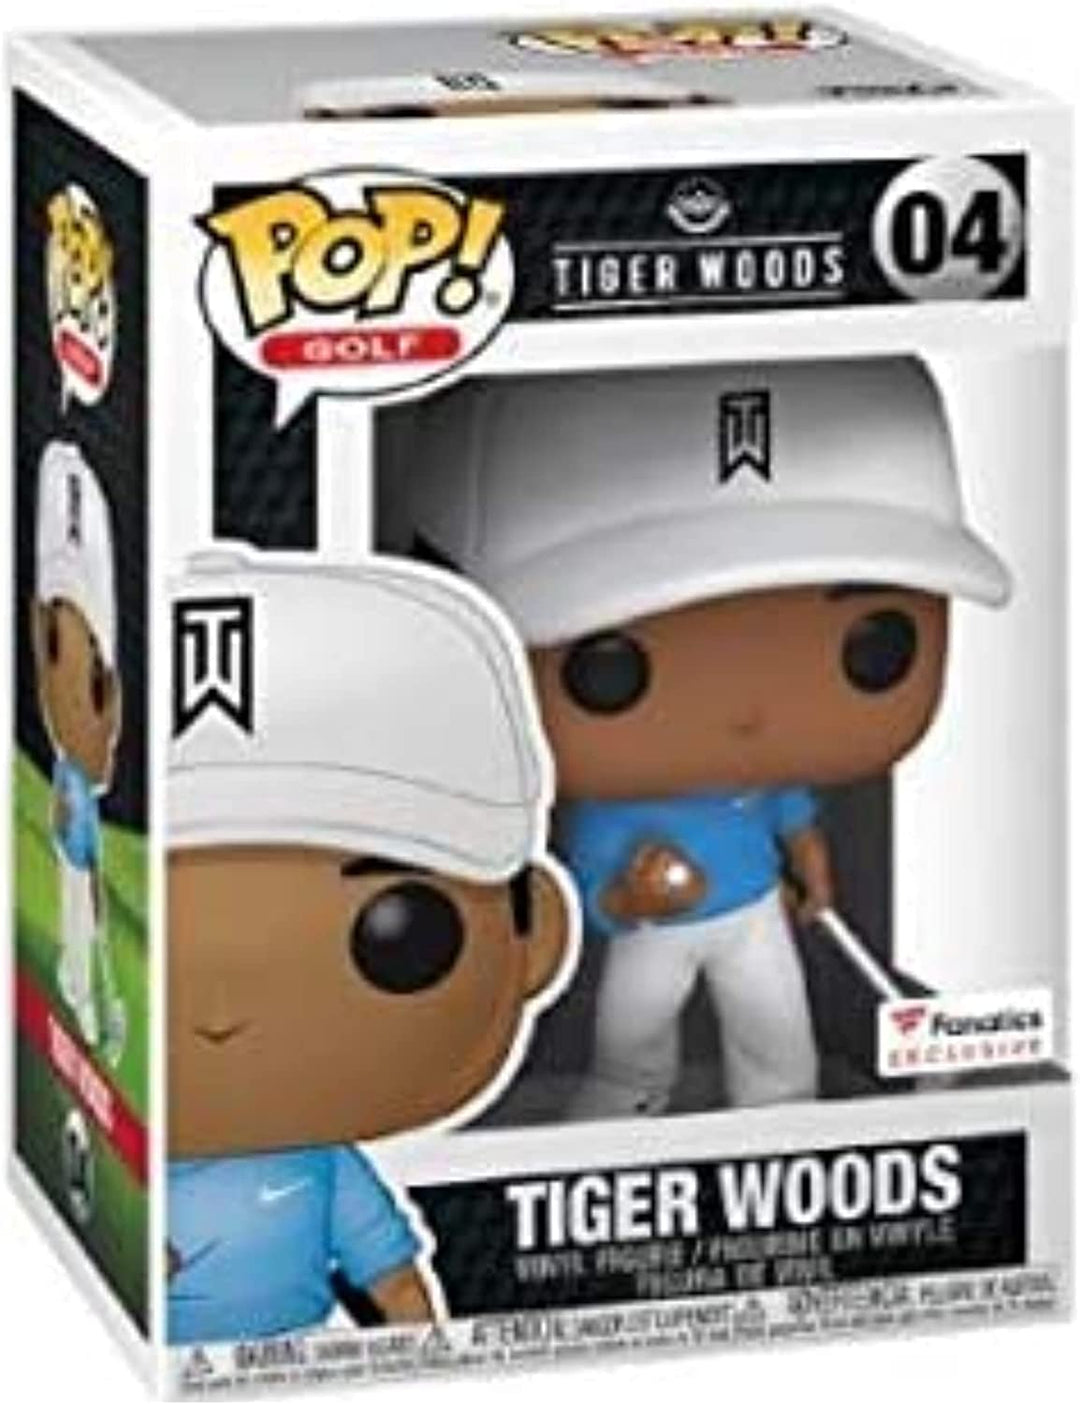 Tiger Woods Exclusive Funko 51185 Pop! Vinyl Nr. 04